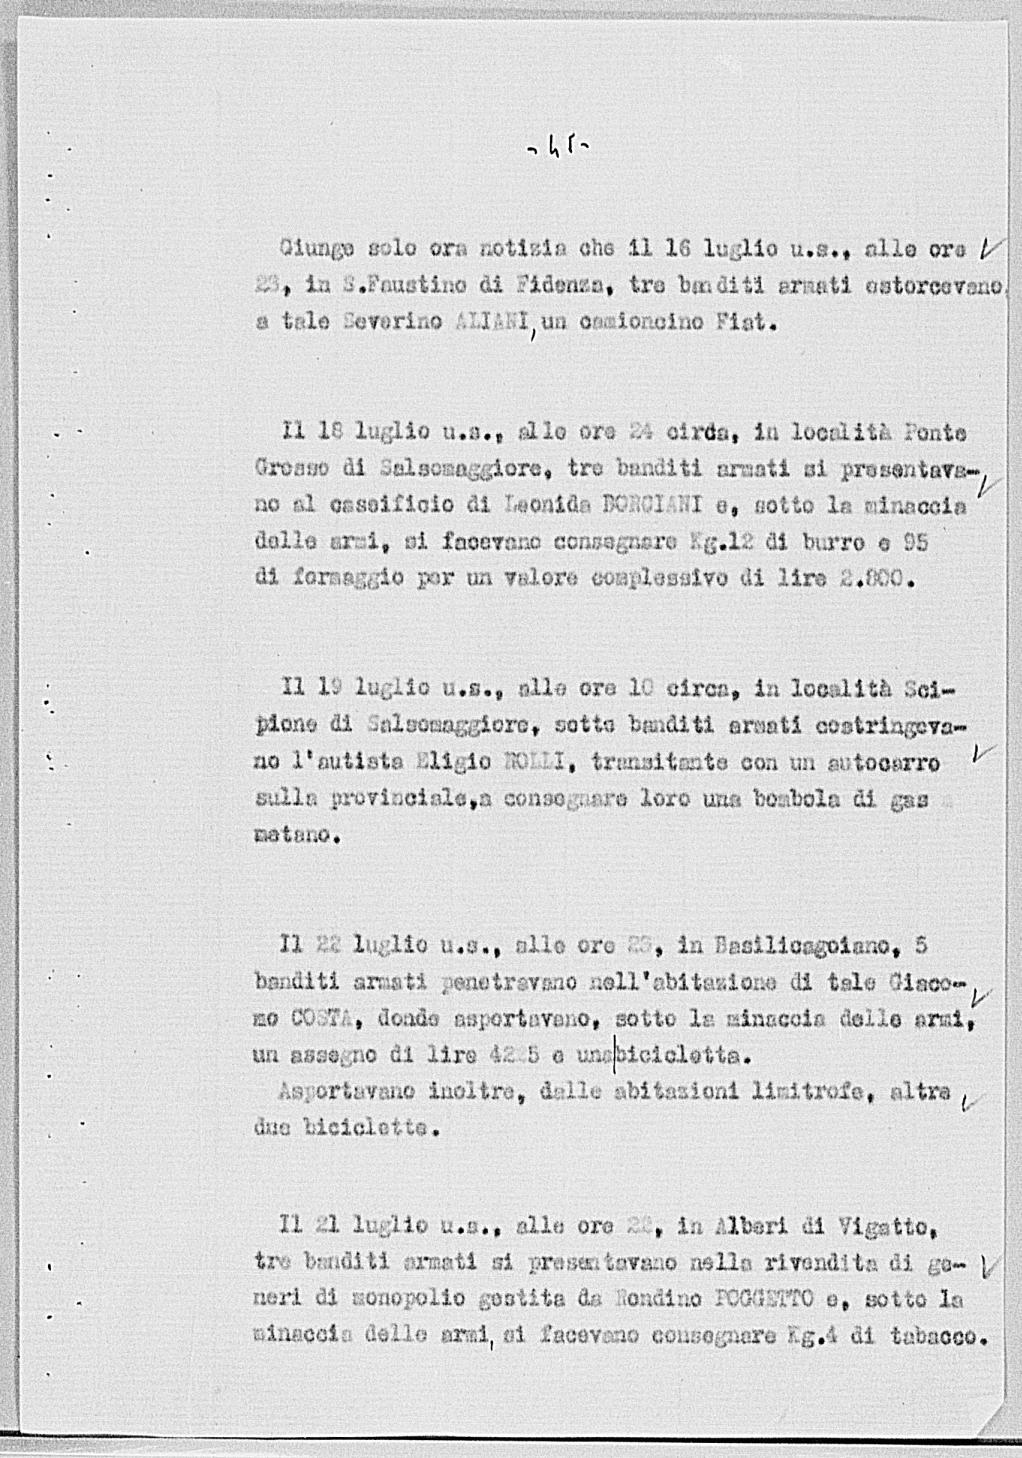 Notizia tratta dal Notiziario della Guardia Nazionale Repubblicana del giorno 13-08-1944